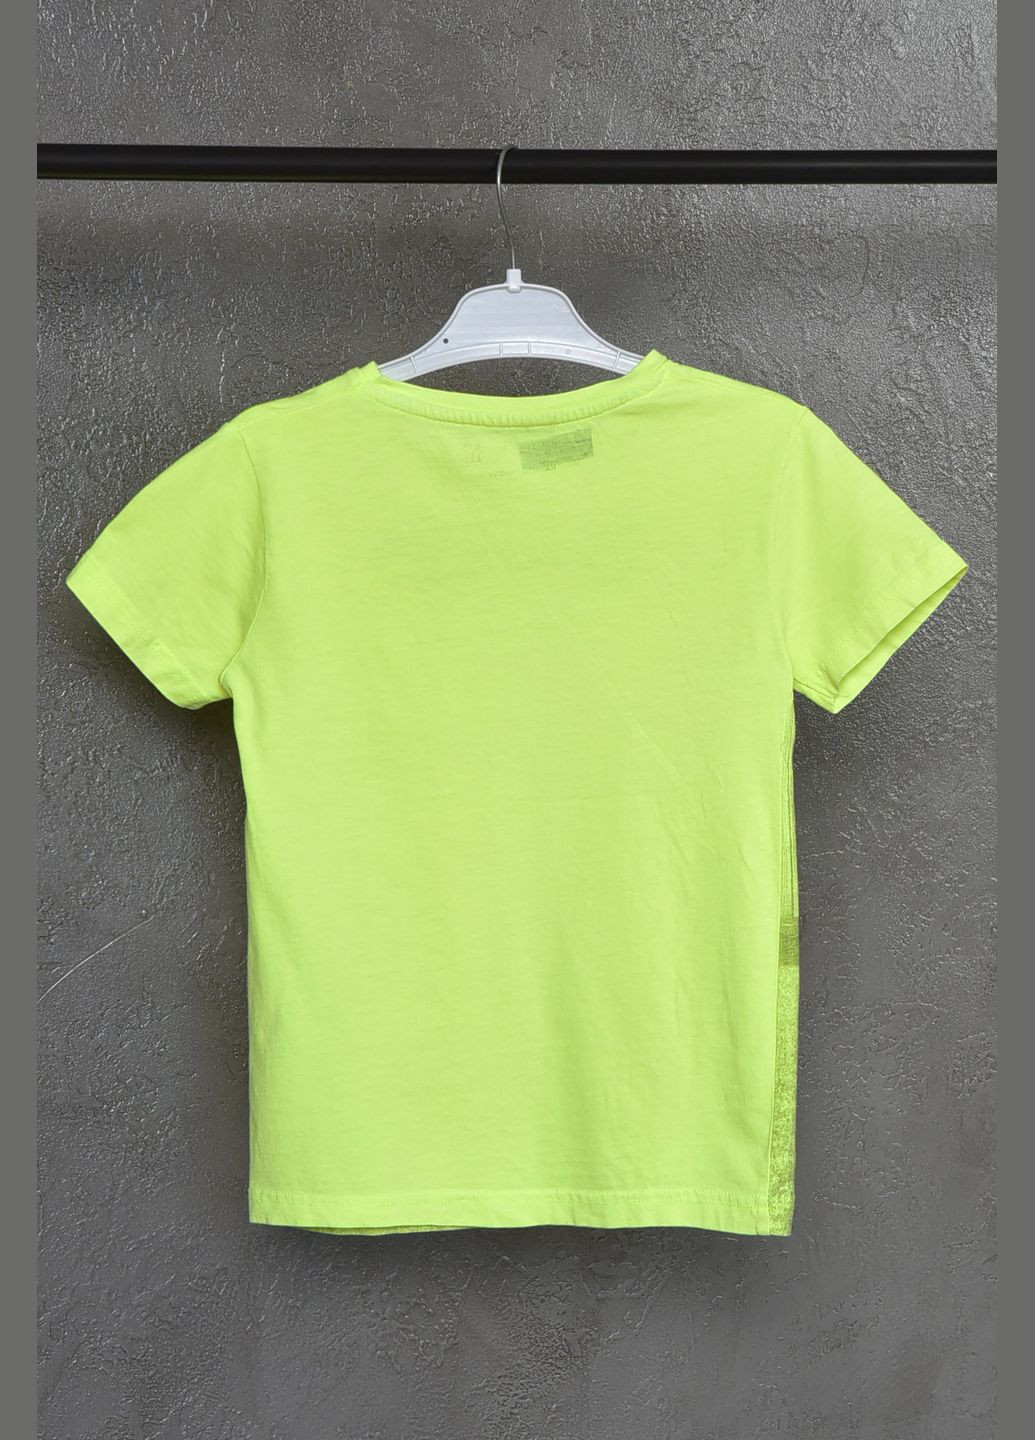 Салатовая летняя футболка детская для мальчика салатового цвета Let's Shop